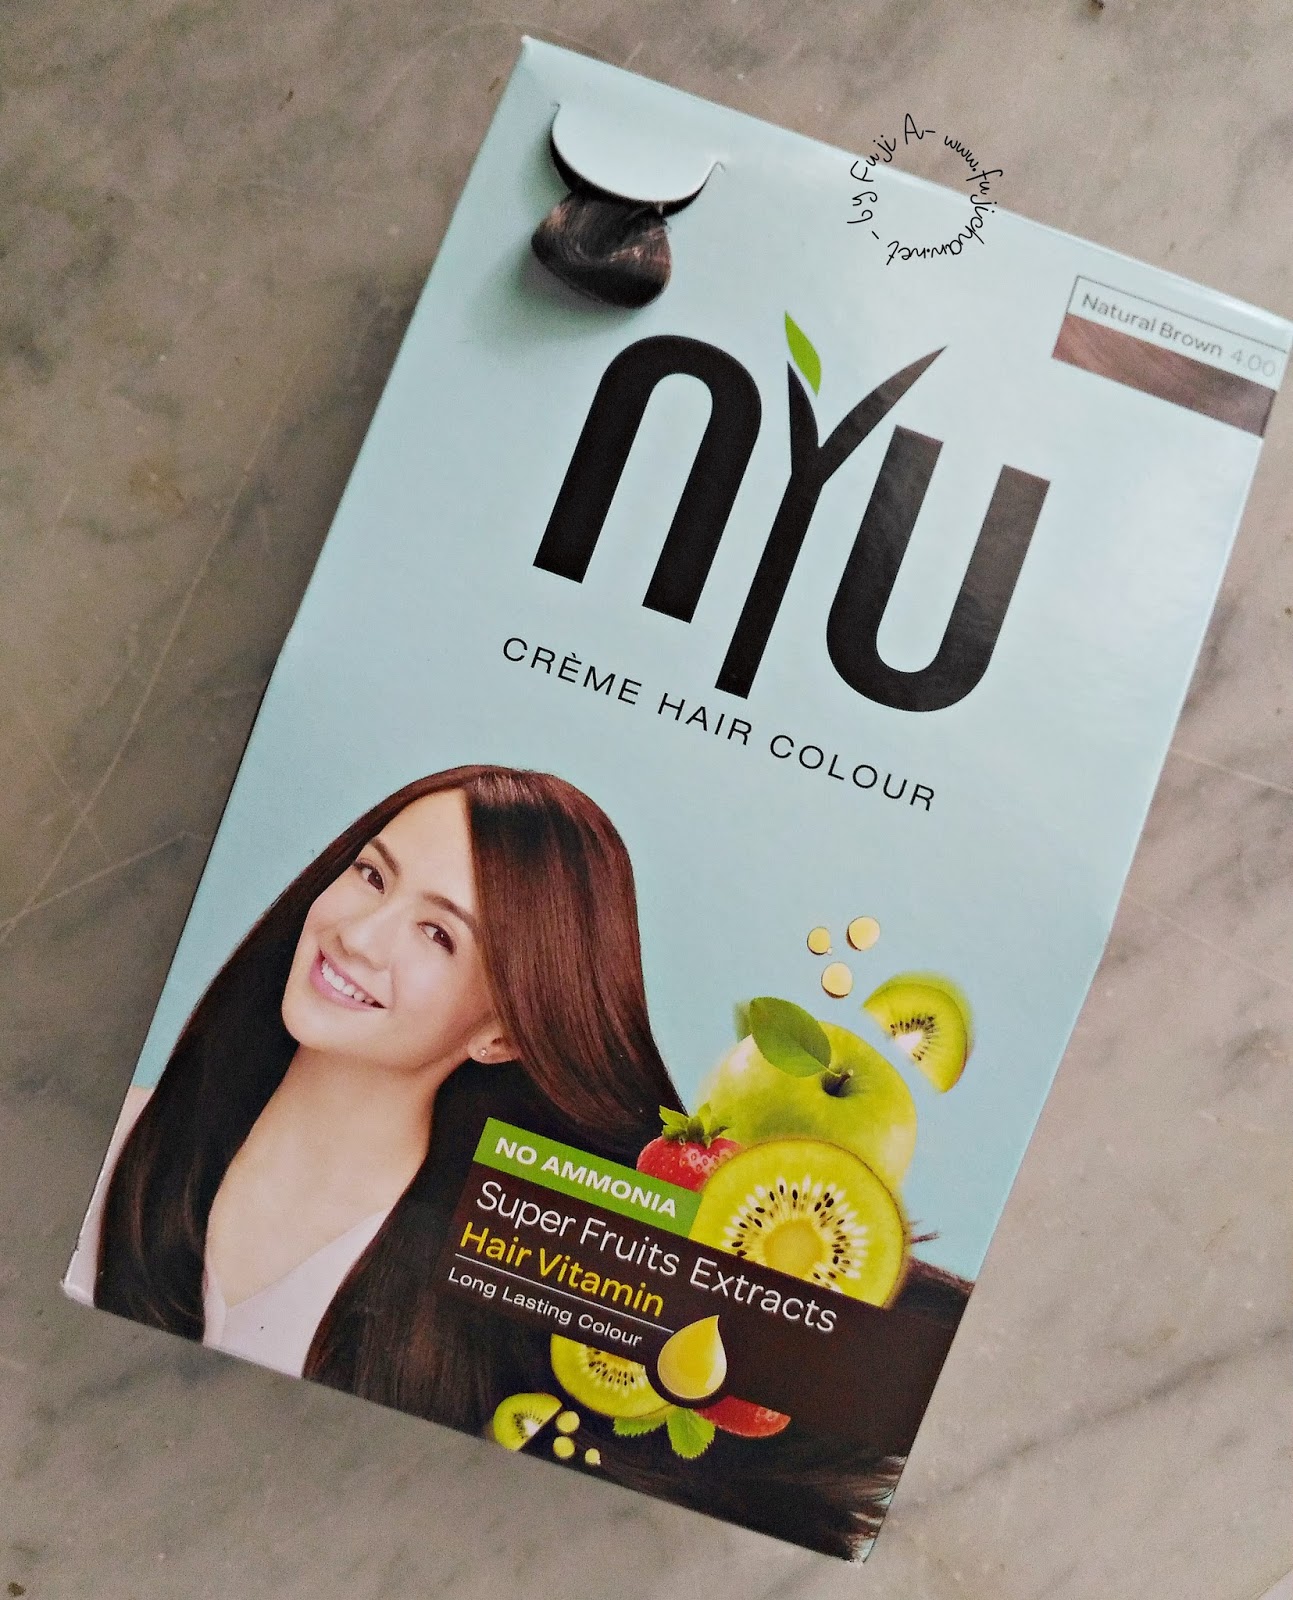 Nyu Creme Hair Color Natural Brown Review Fuji Astyanis Blog